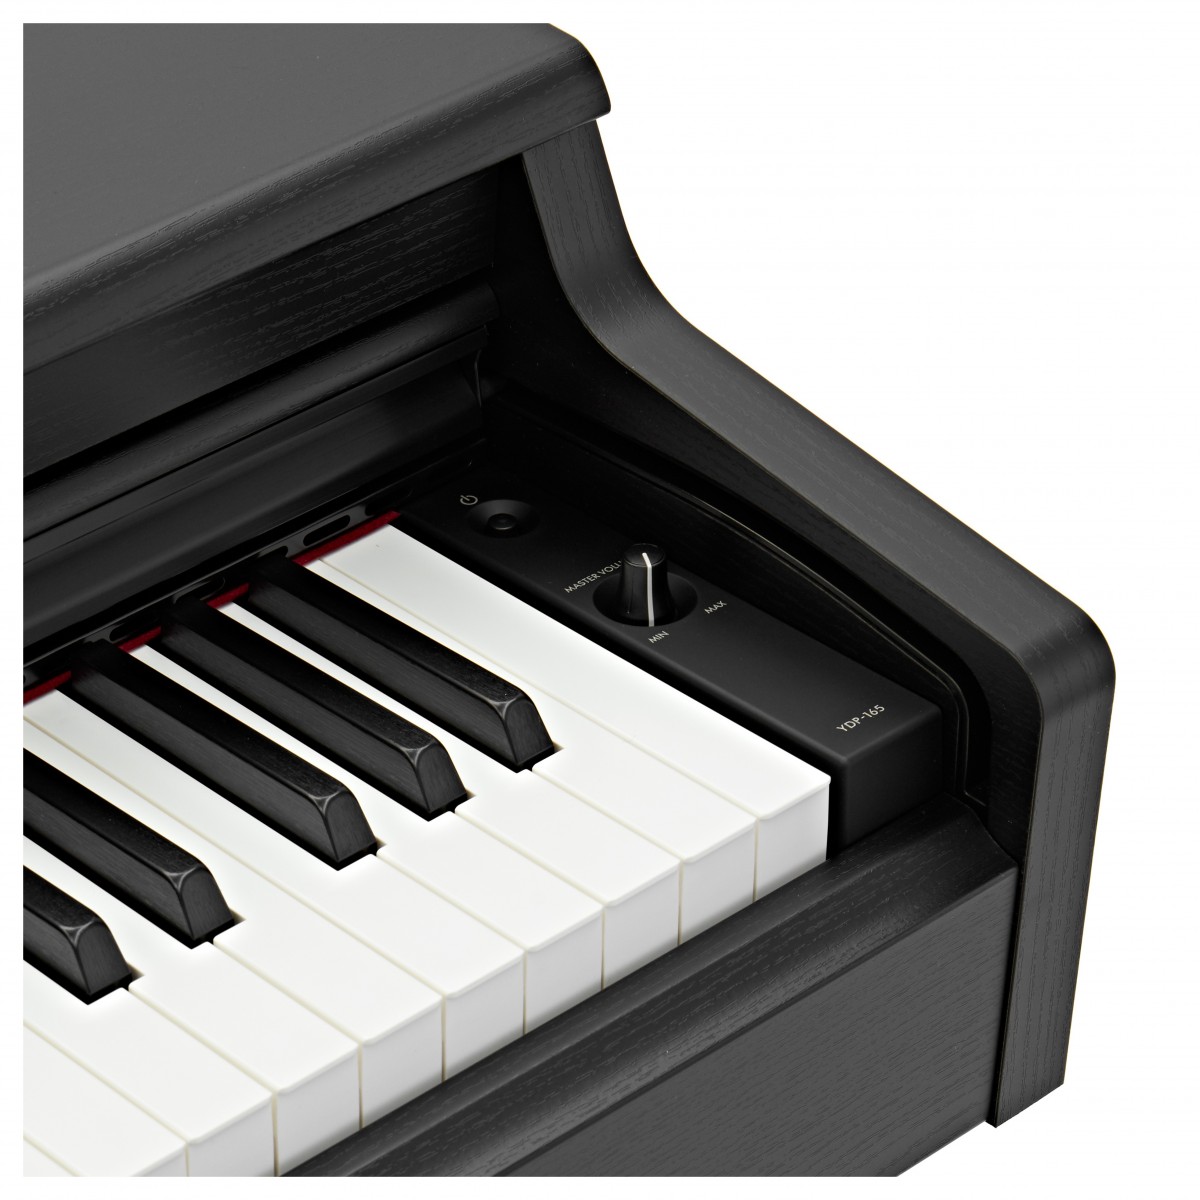 Цифровое пианино Yamaha YDP-165 B